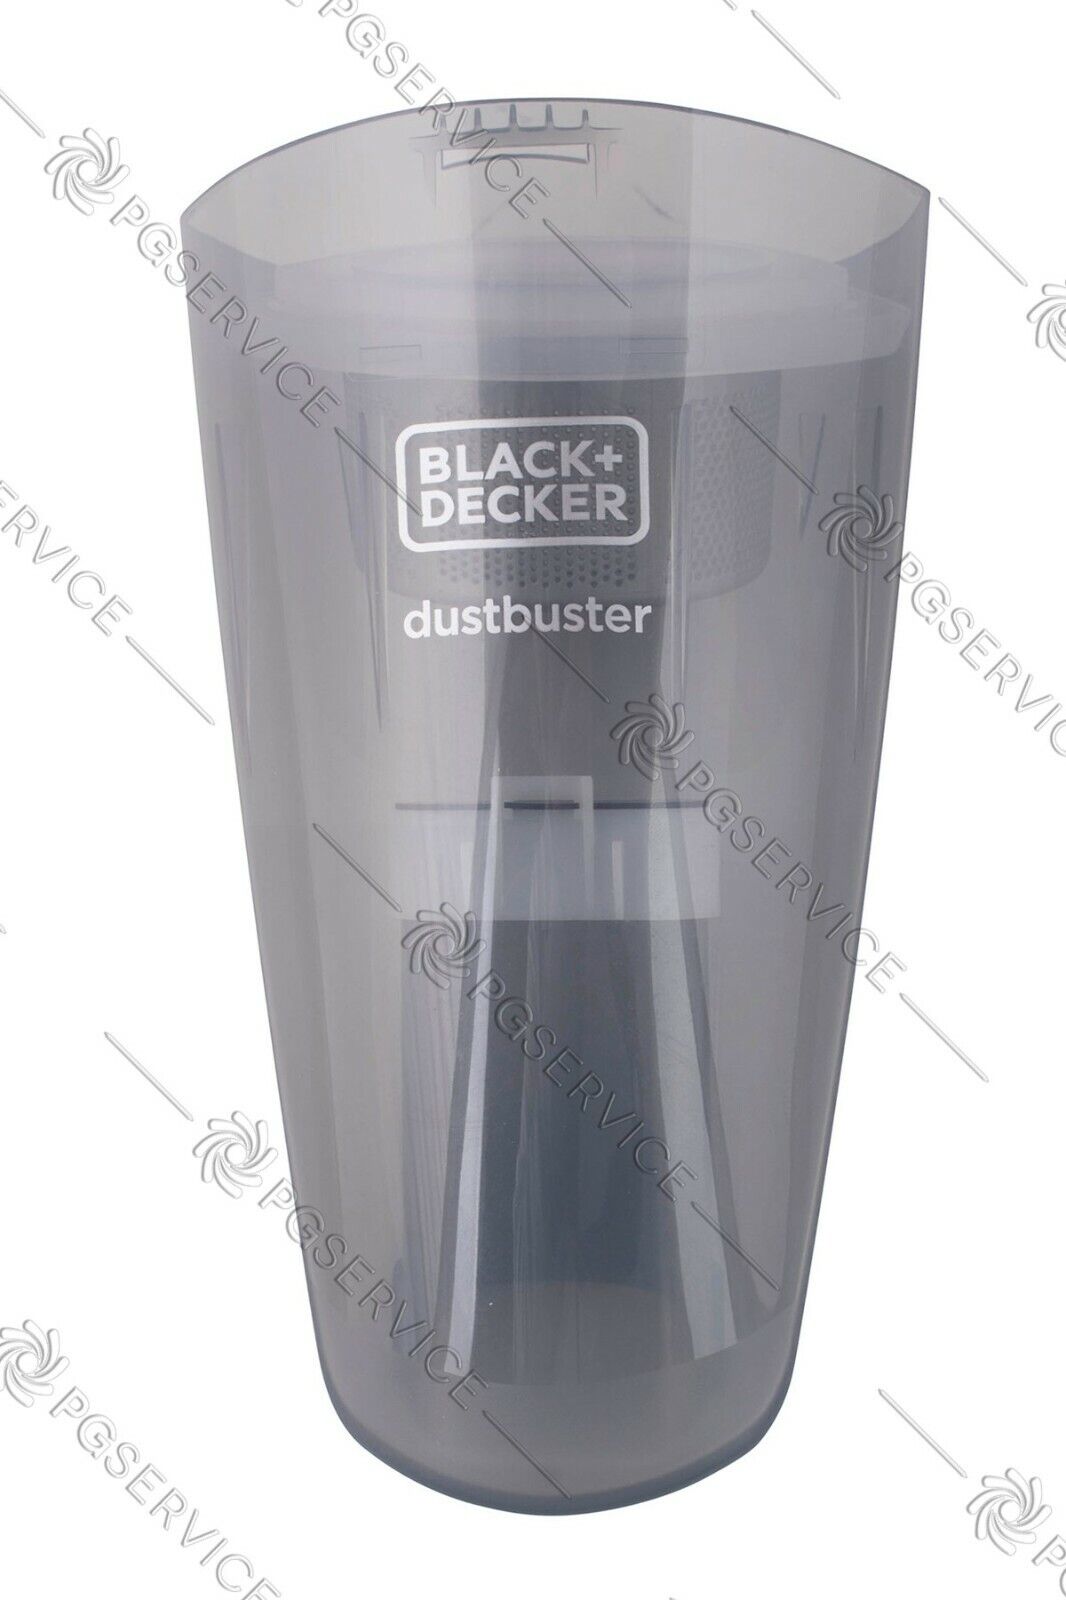 Black & Decker serbatoio tanica filtro aspirabriciole Dustbuster 7.2V NVB215W